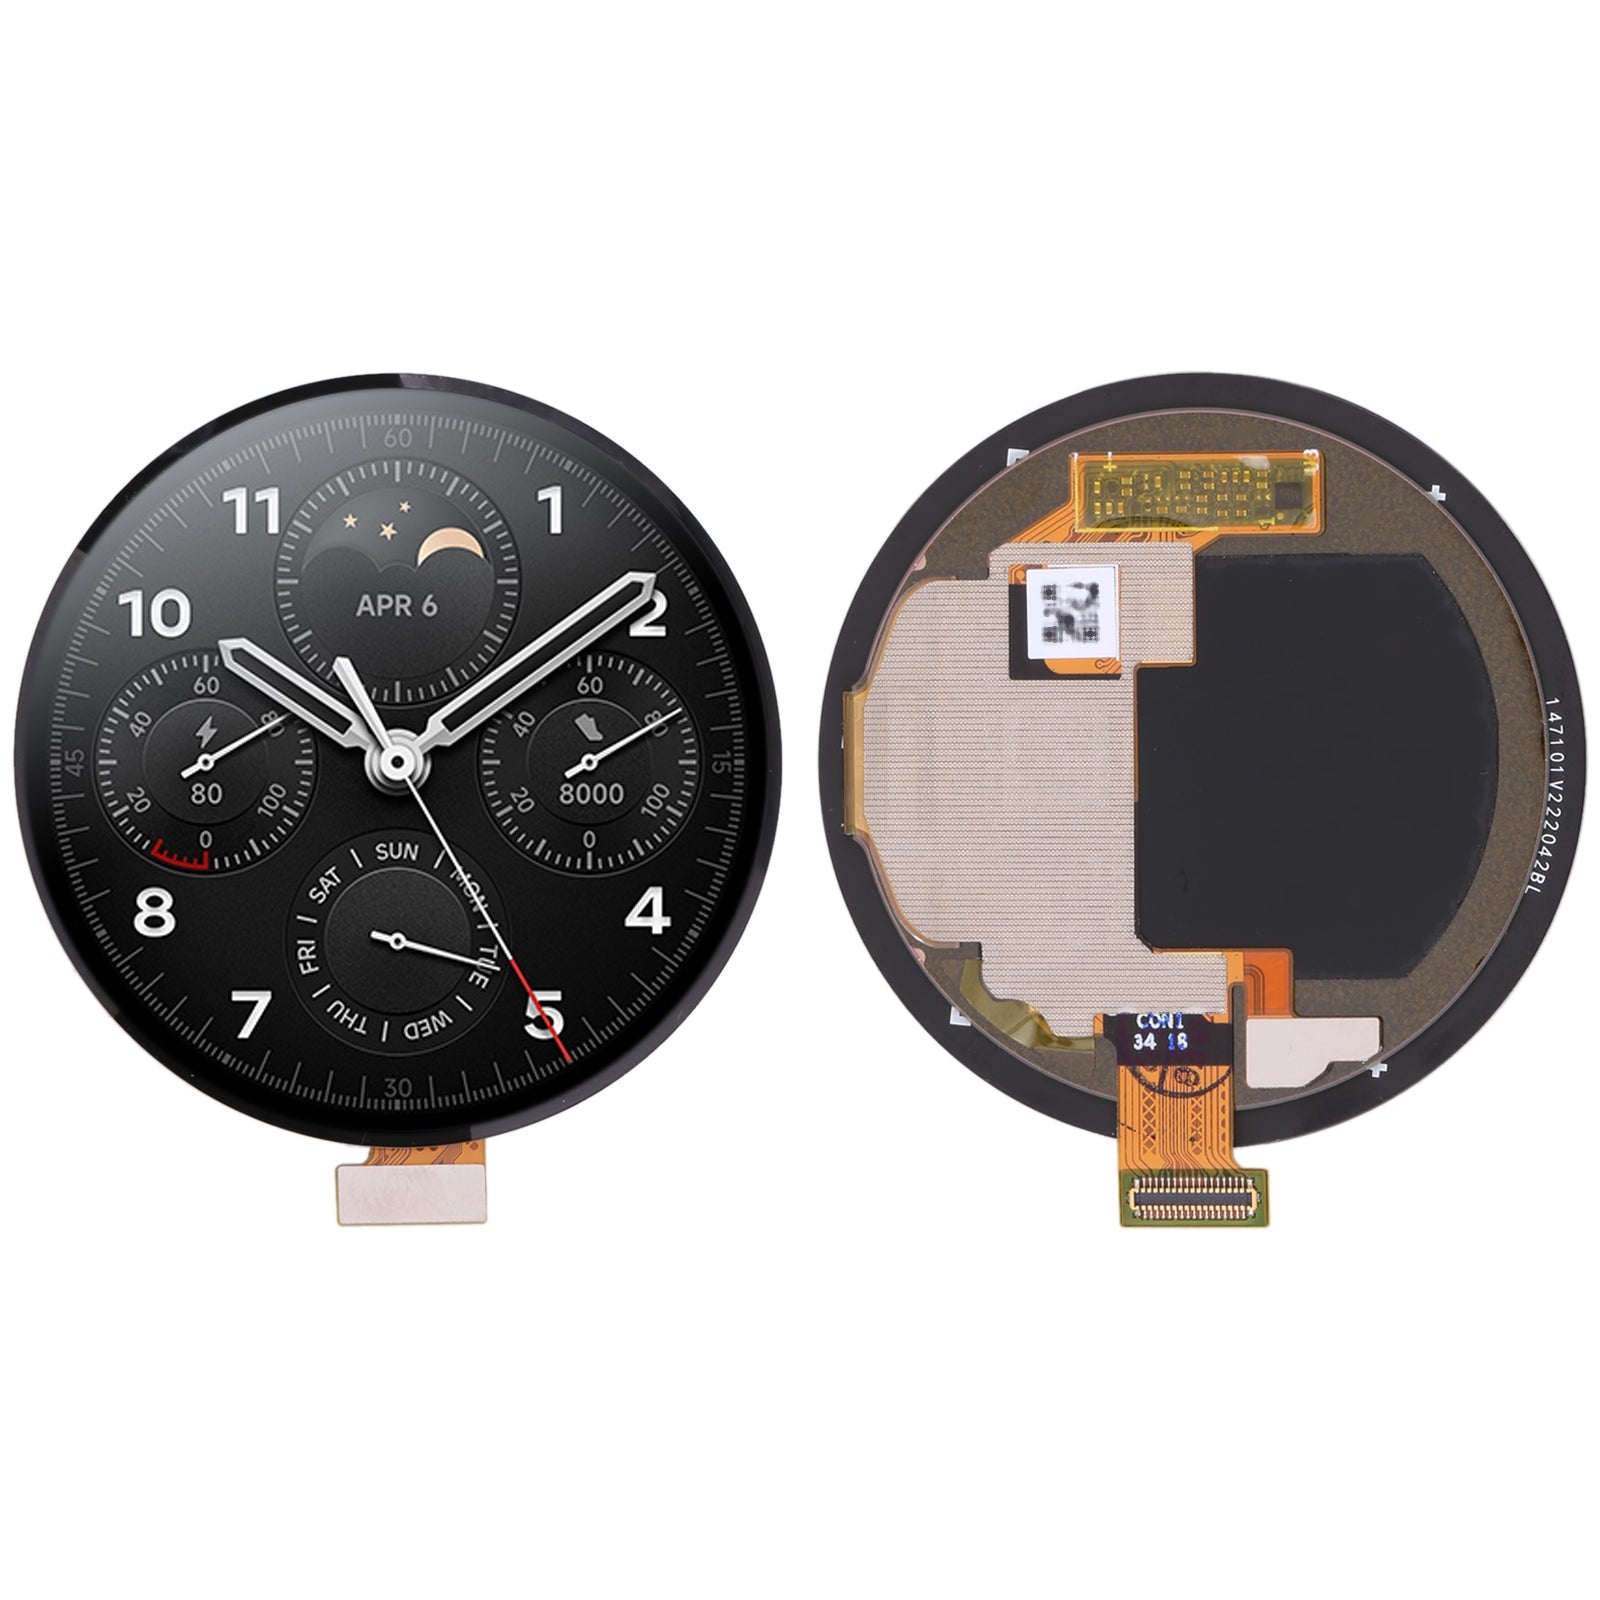 Pantalla Completa + Tactil + Marco Xiaomi Watch S1 Pro Plata